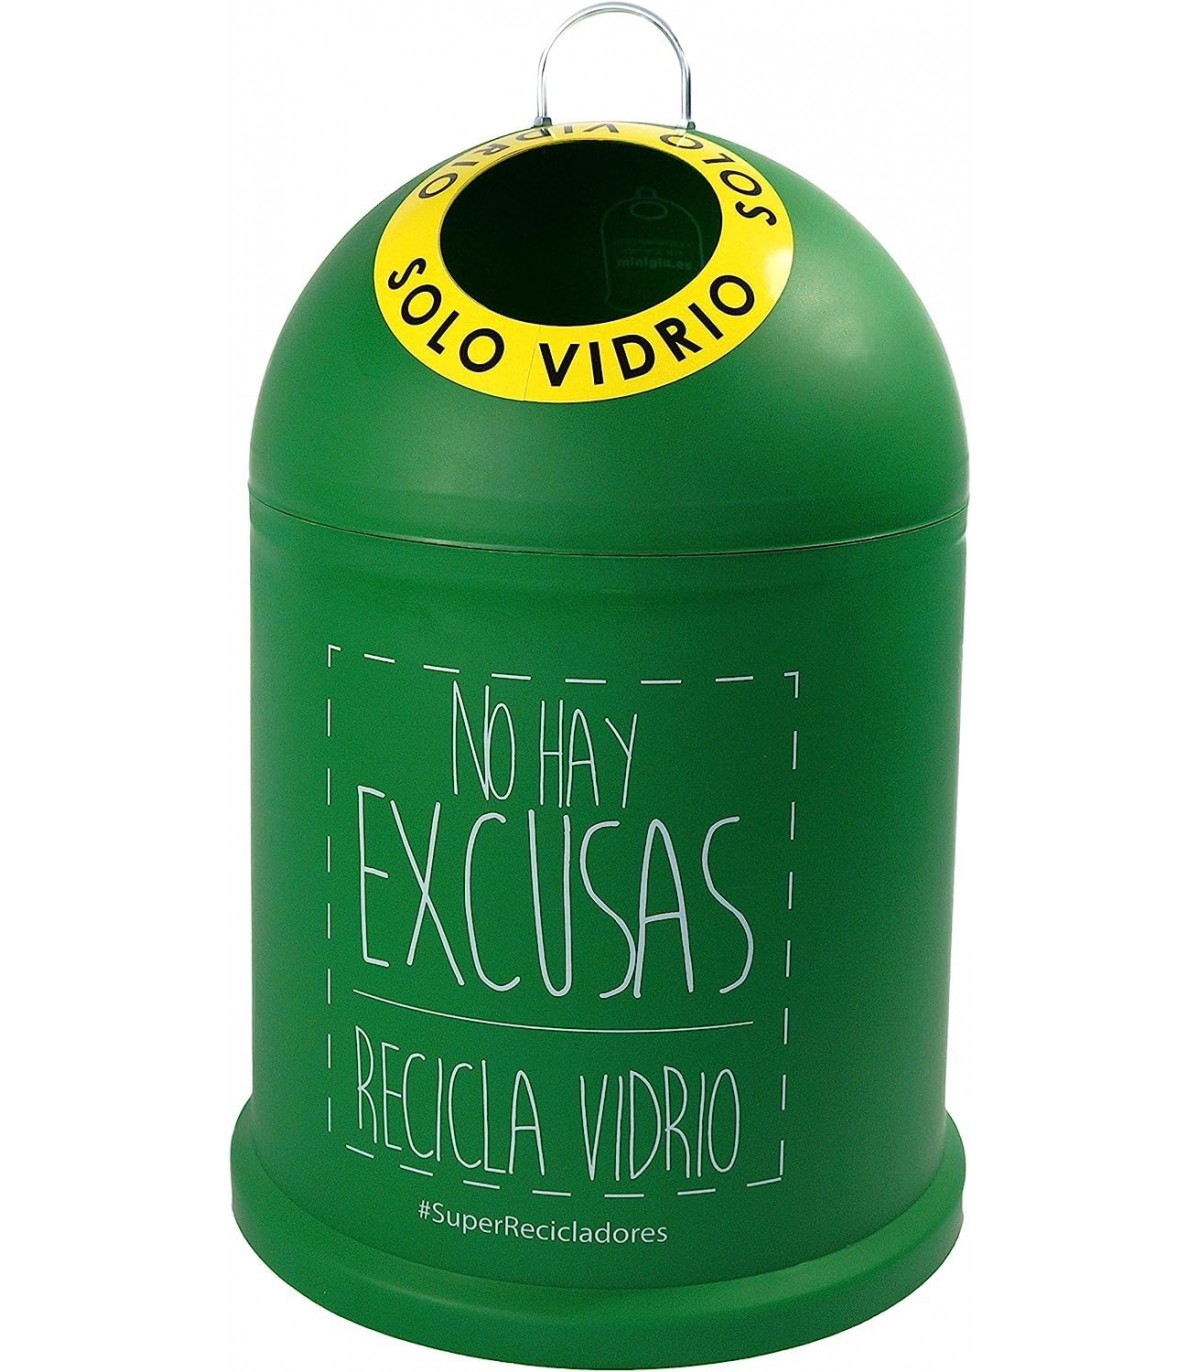 TIENDA EURASIA - Cubo de Basura para Reciclaje de Vidrio Original